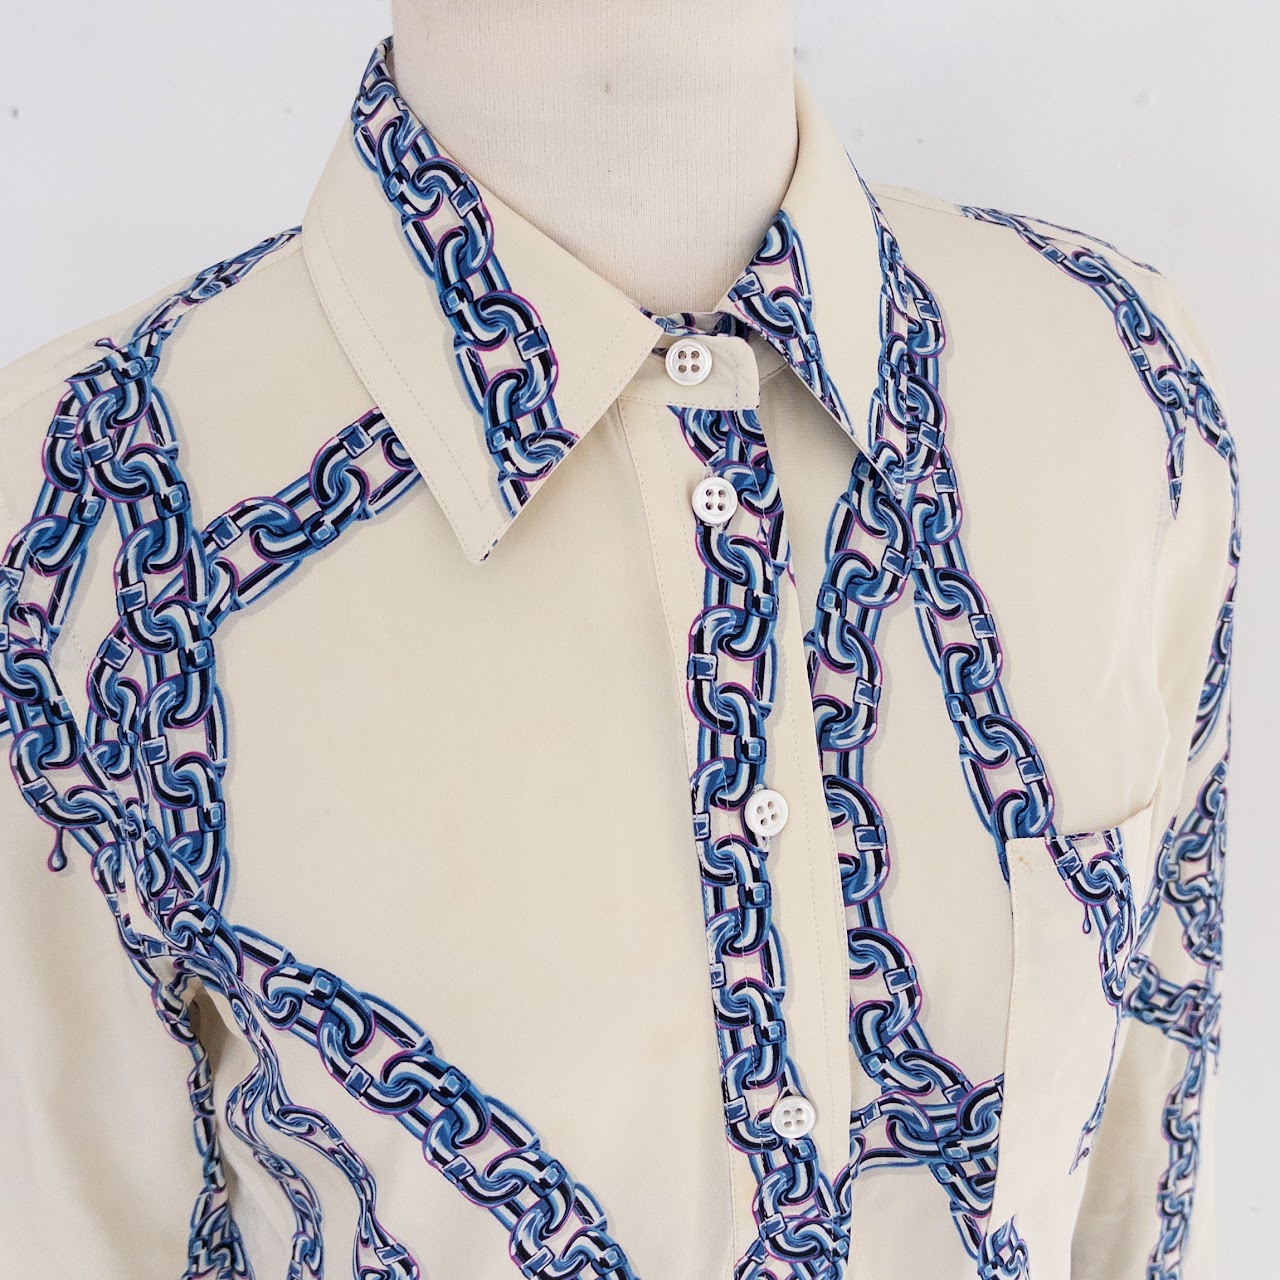 Louis Vuitton Chain Printed Shirt